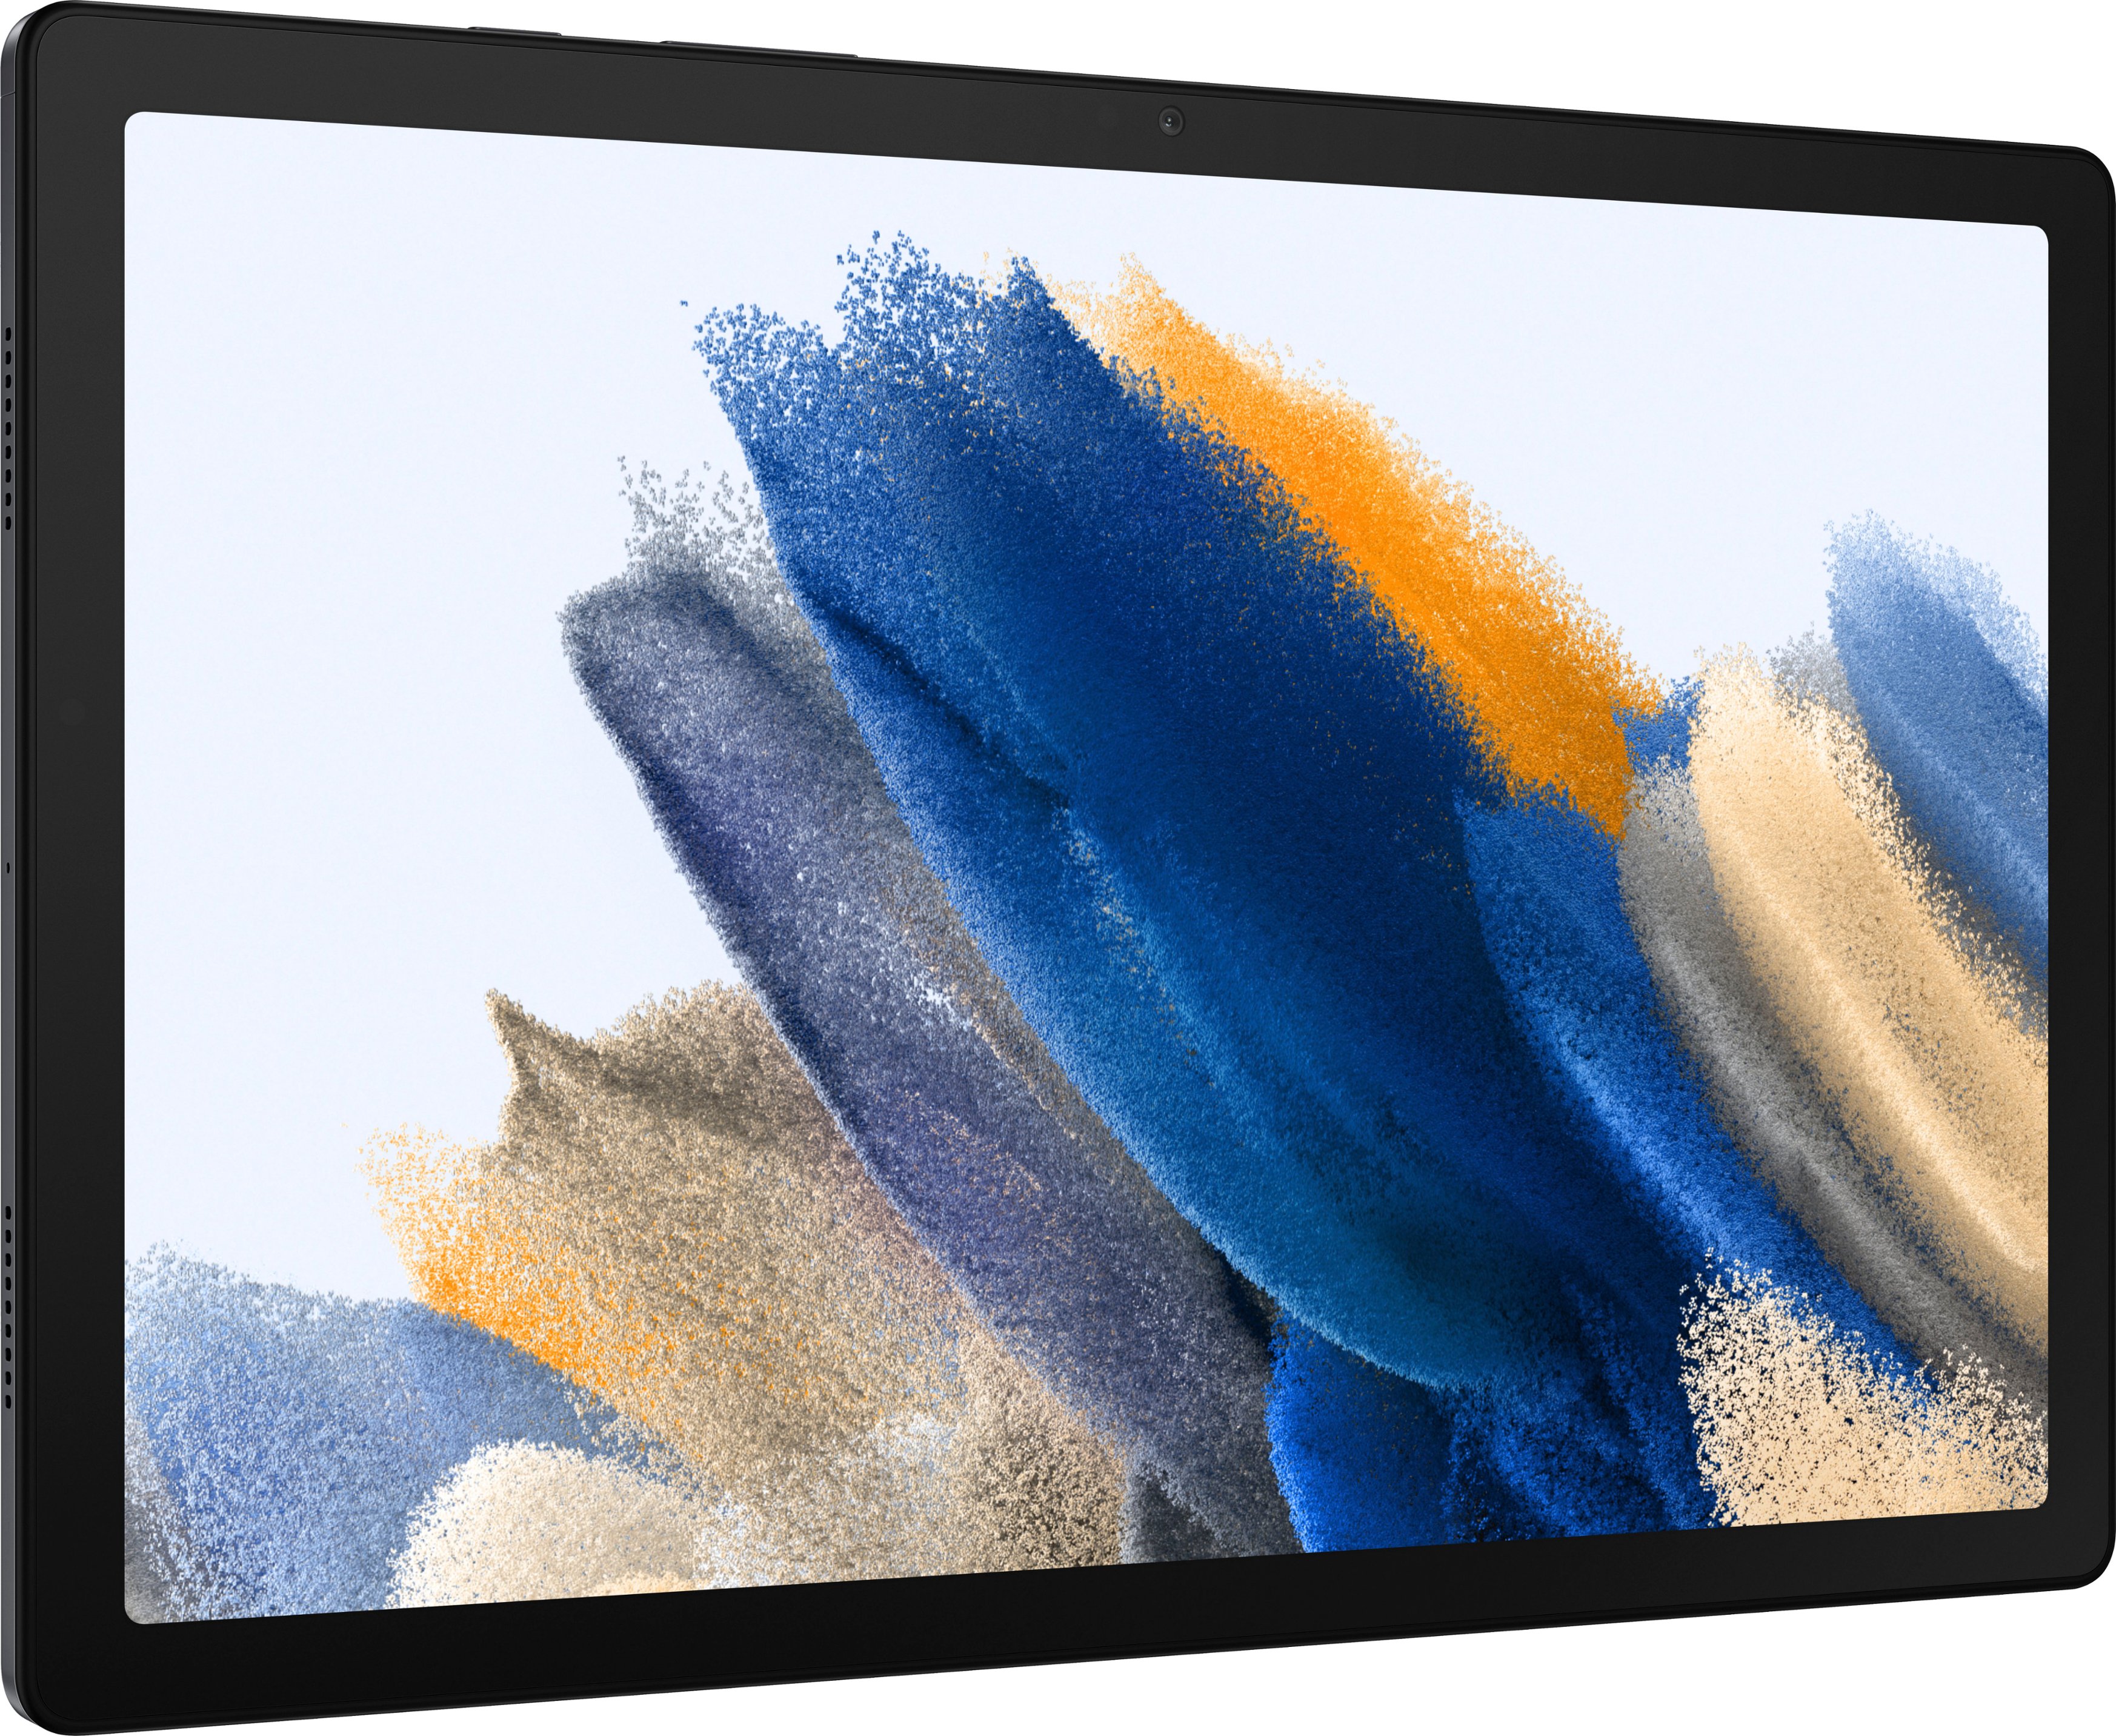 Samsung Galaxy Tab S 10.5 Wi-Fi + 4G LTE 16GB  - Best Buy